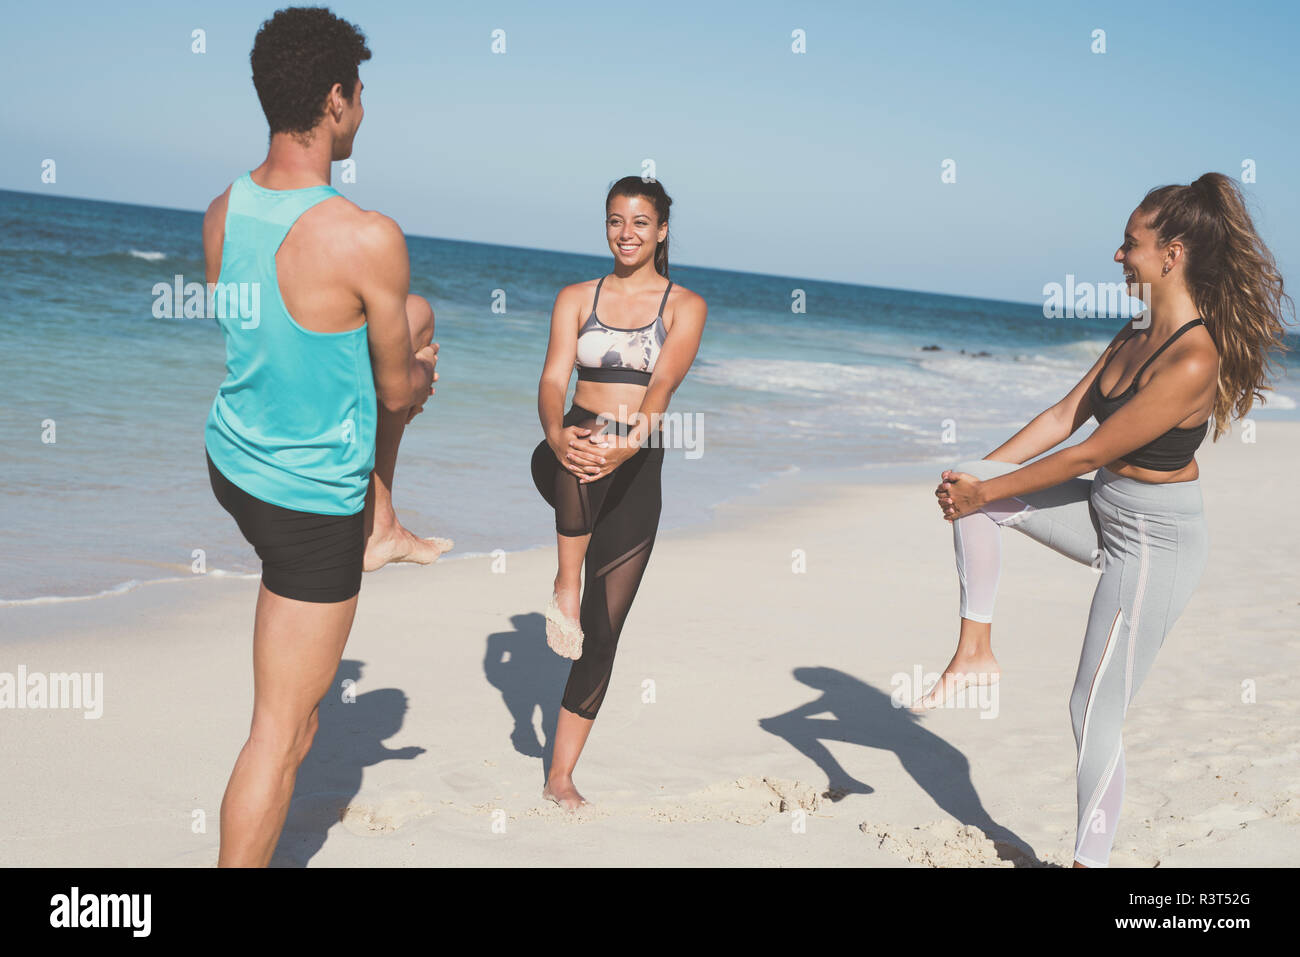 Spanien, Kanarische Inseln, Fuerteventura, zwei junge Frauen und ein junger Mann stretching am Strand Stockfoto